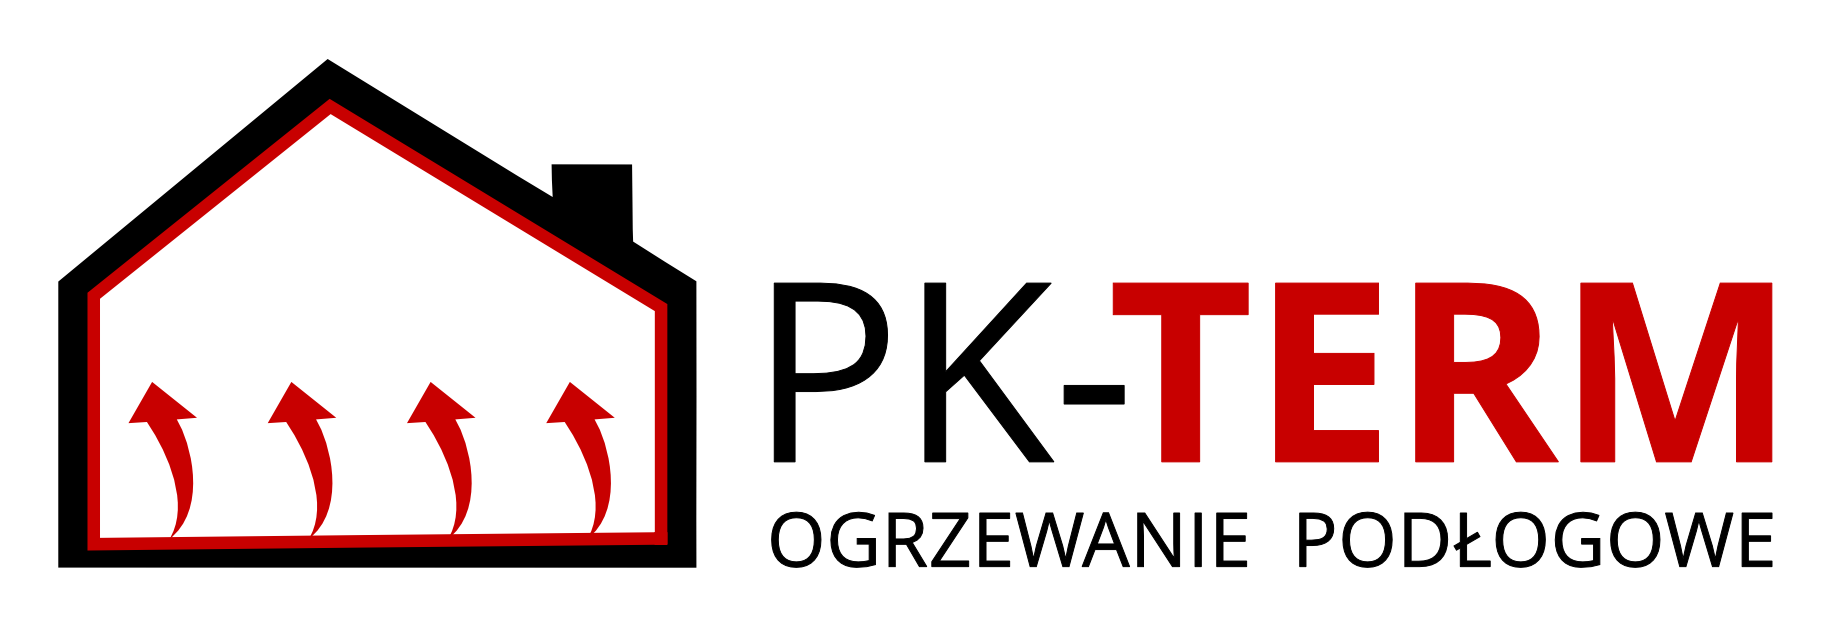 pk-term logo